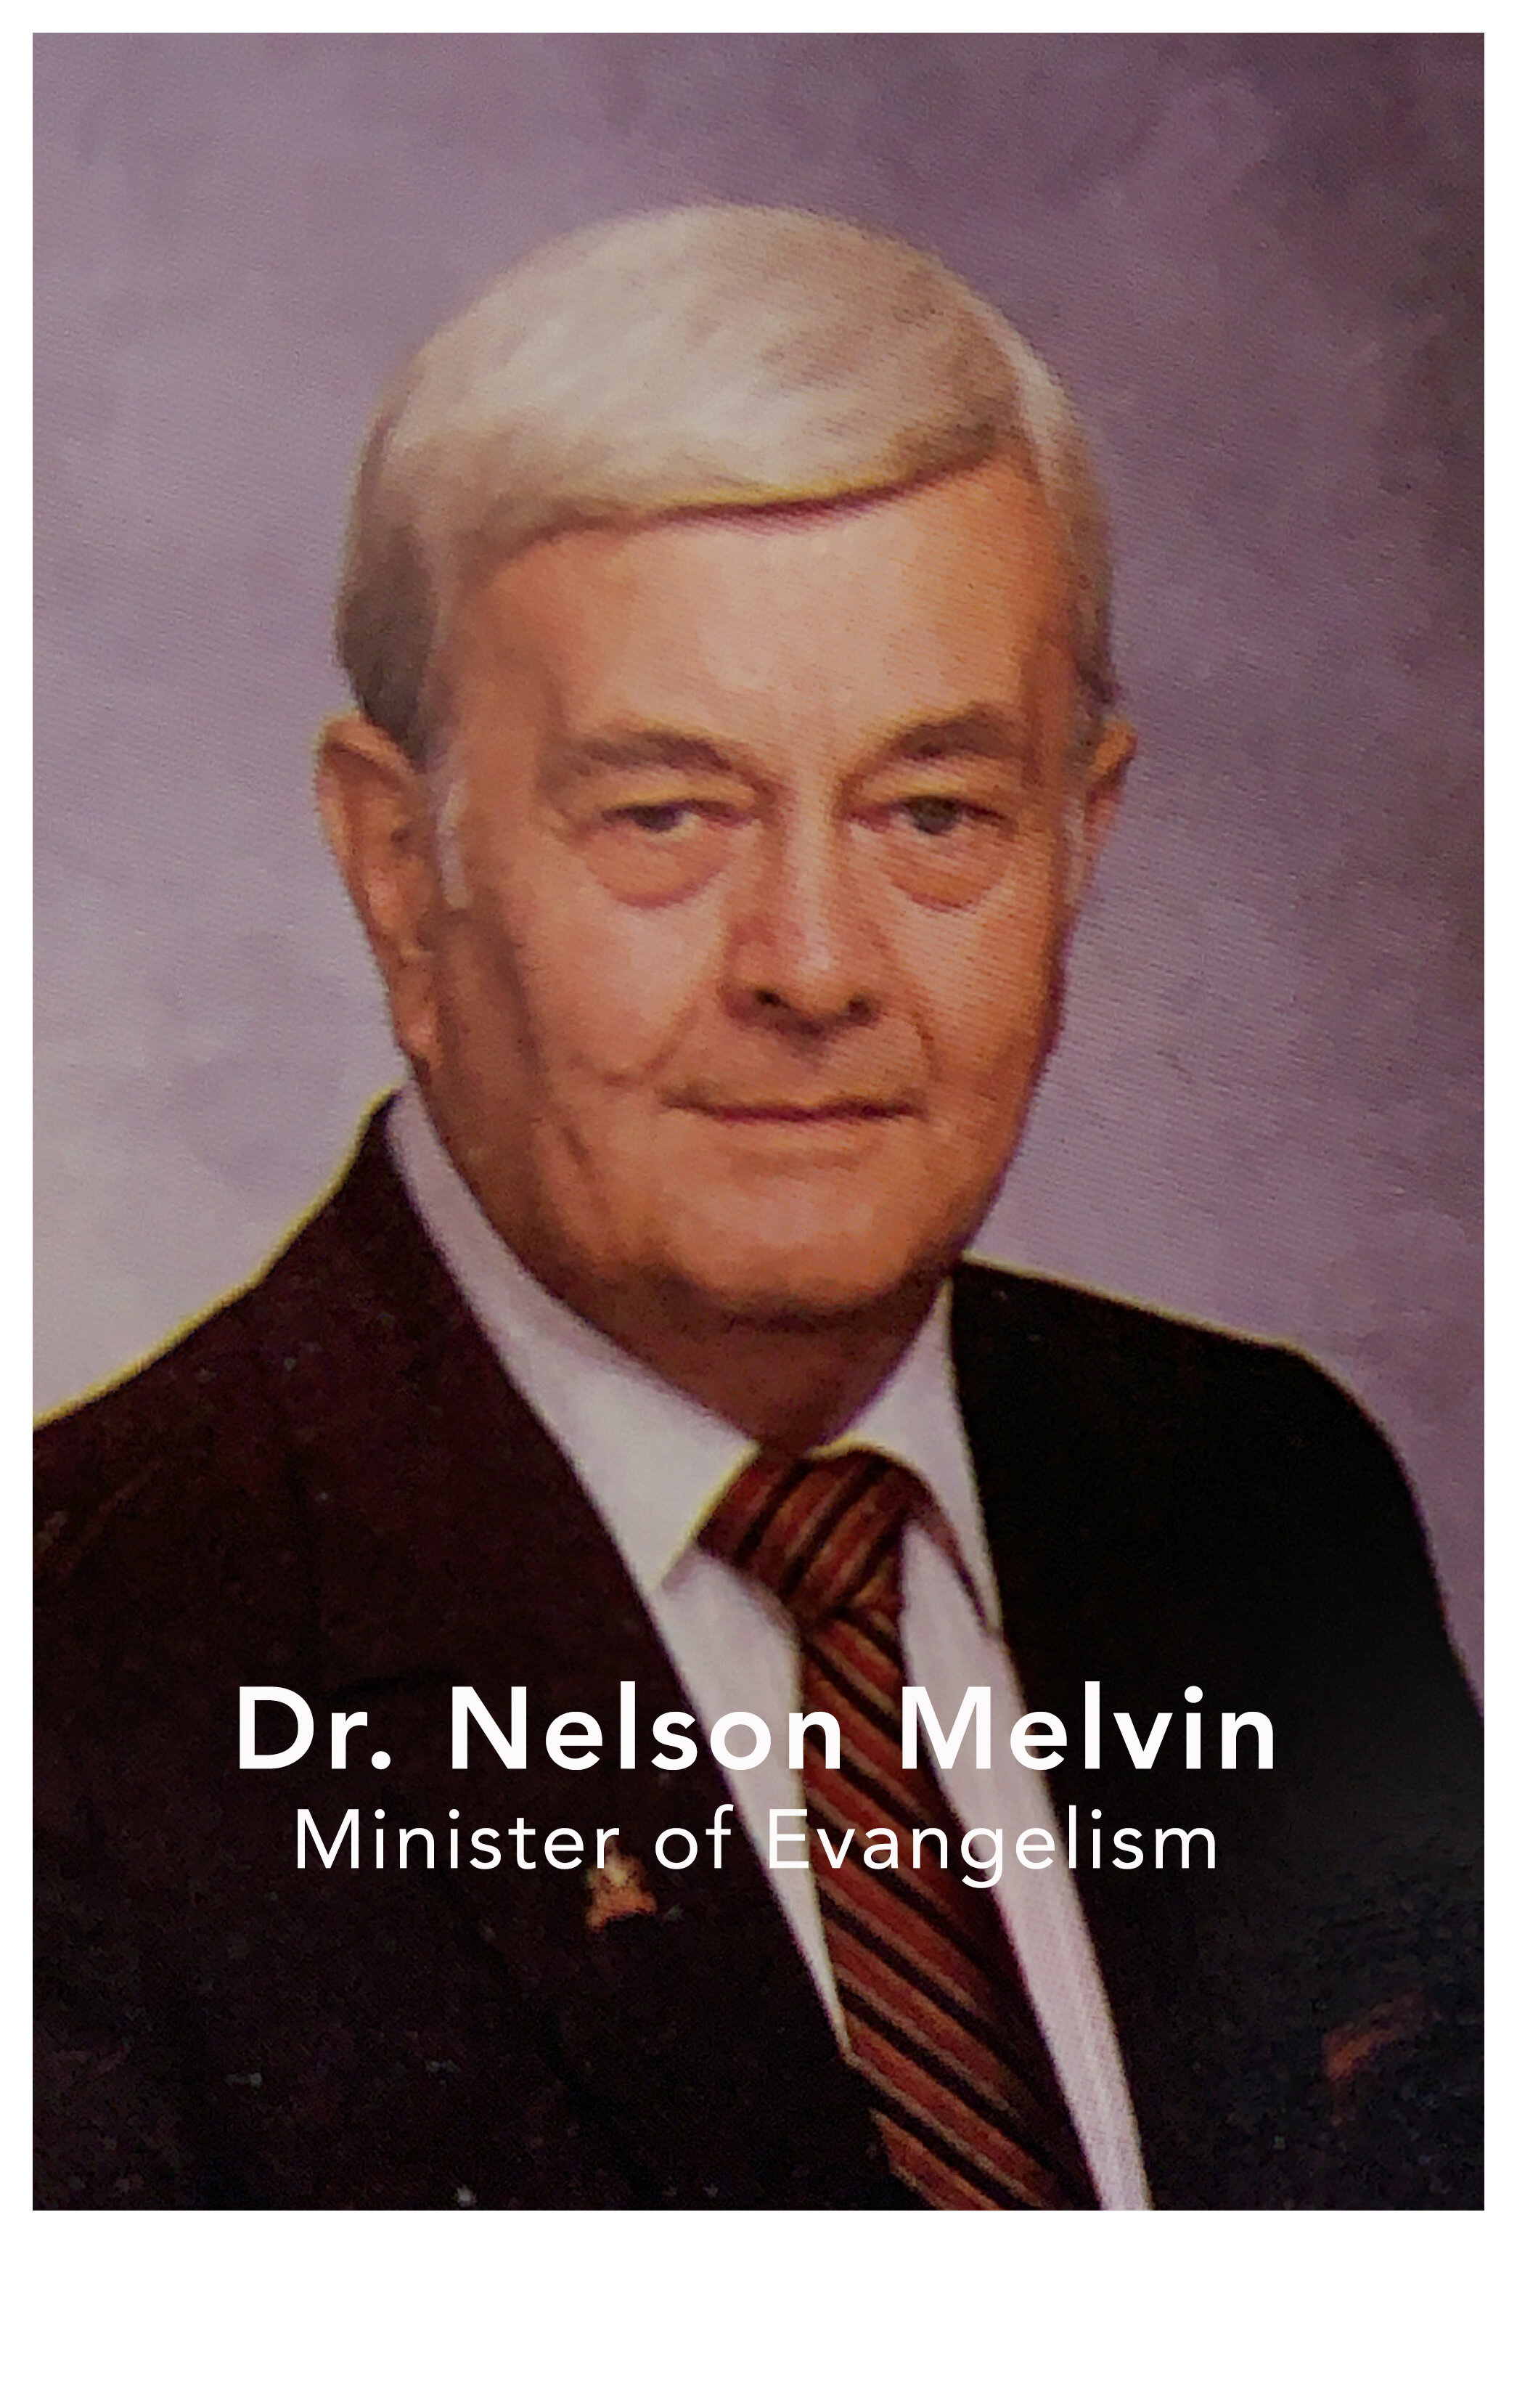 Nelson Melvin2.jpg